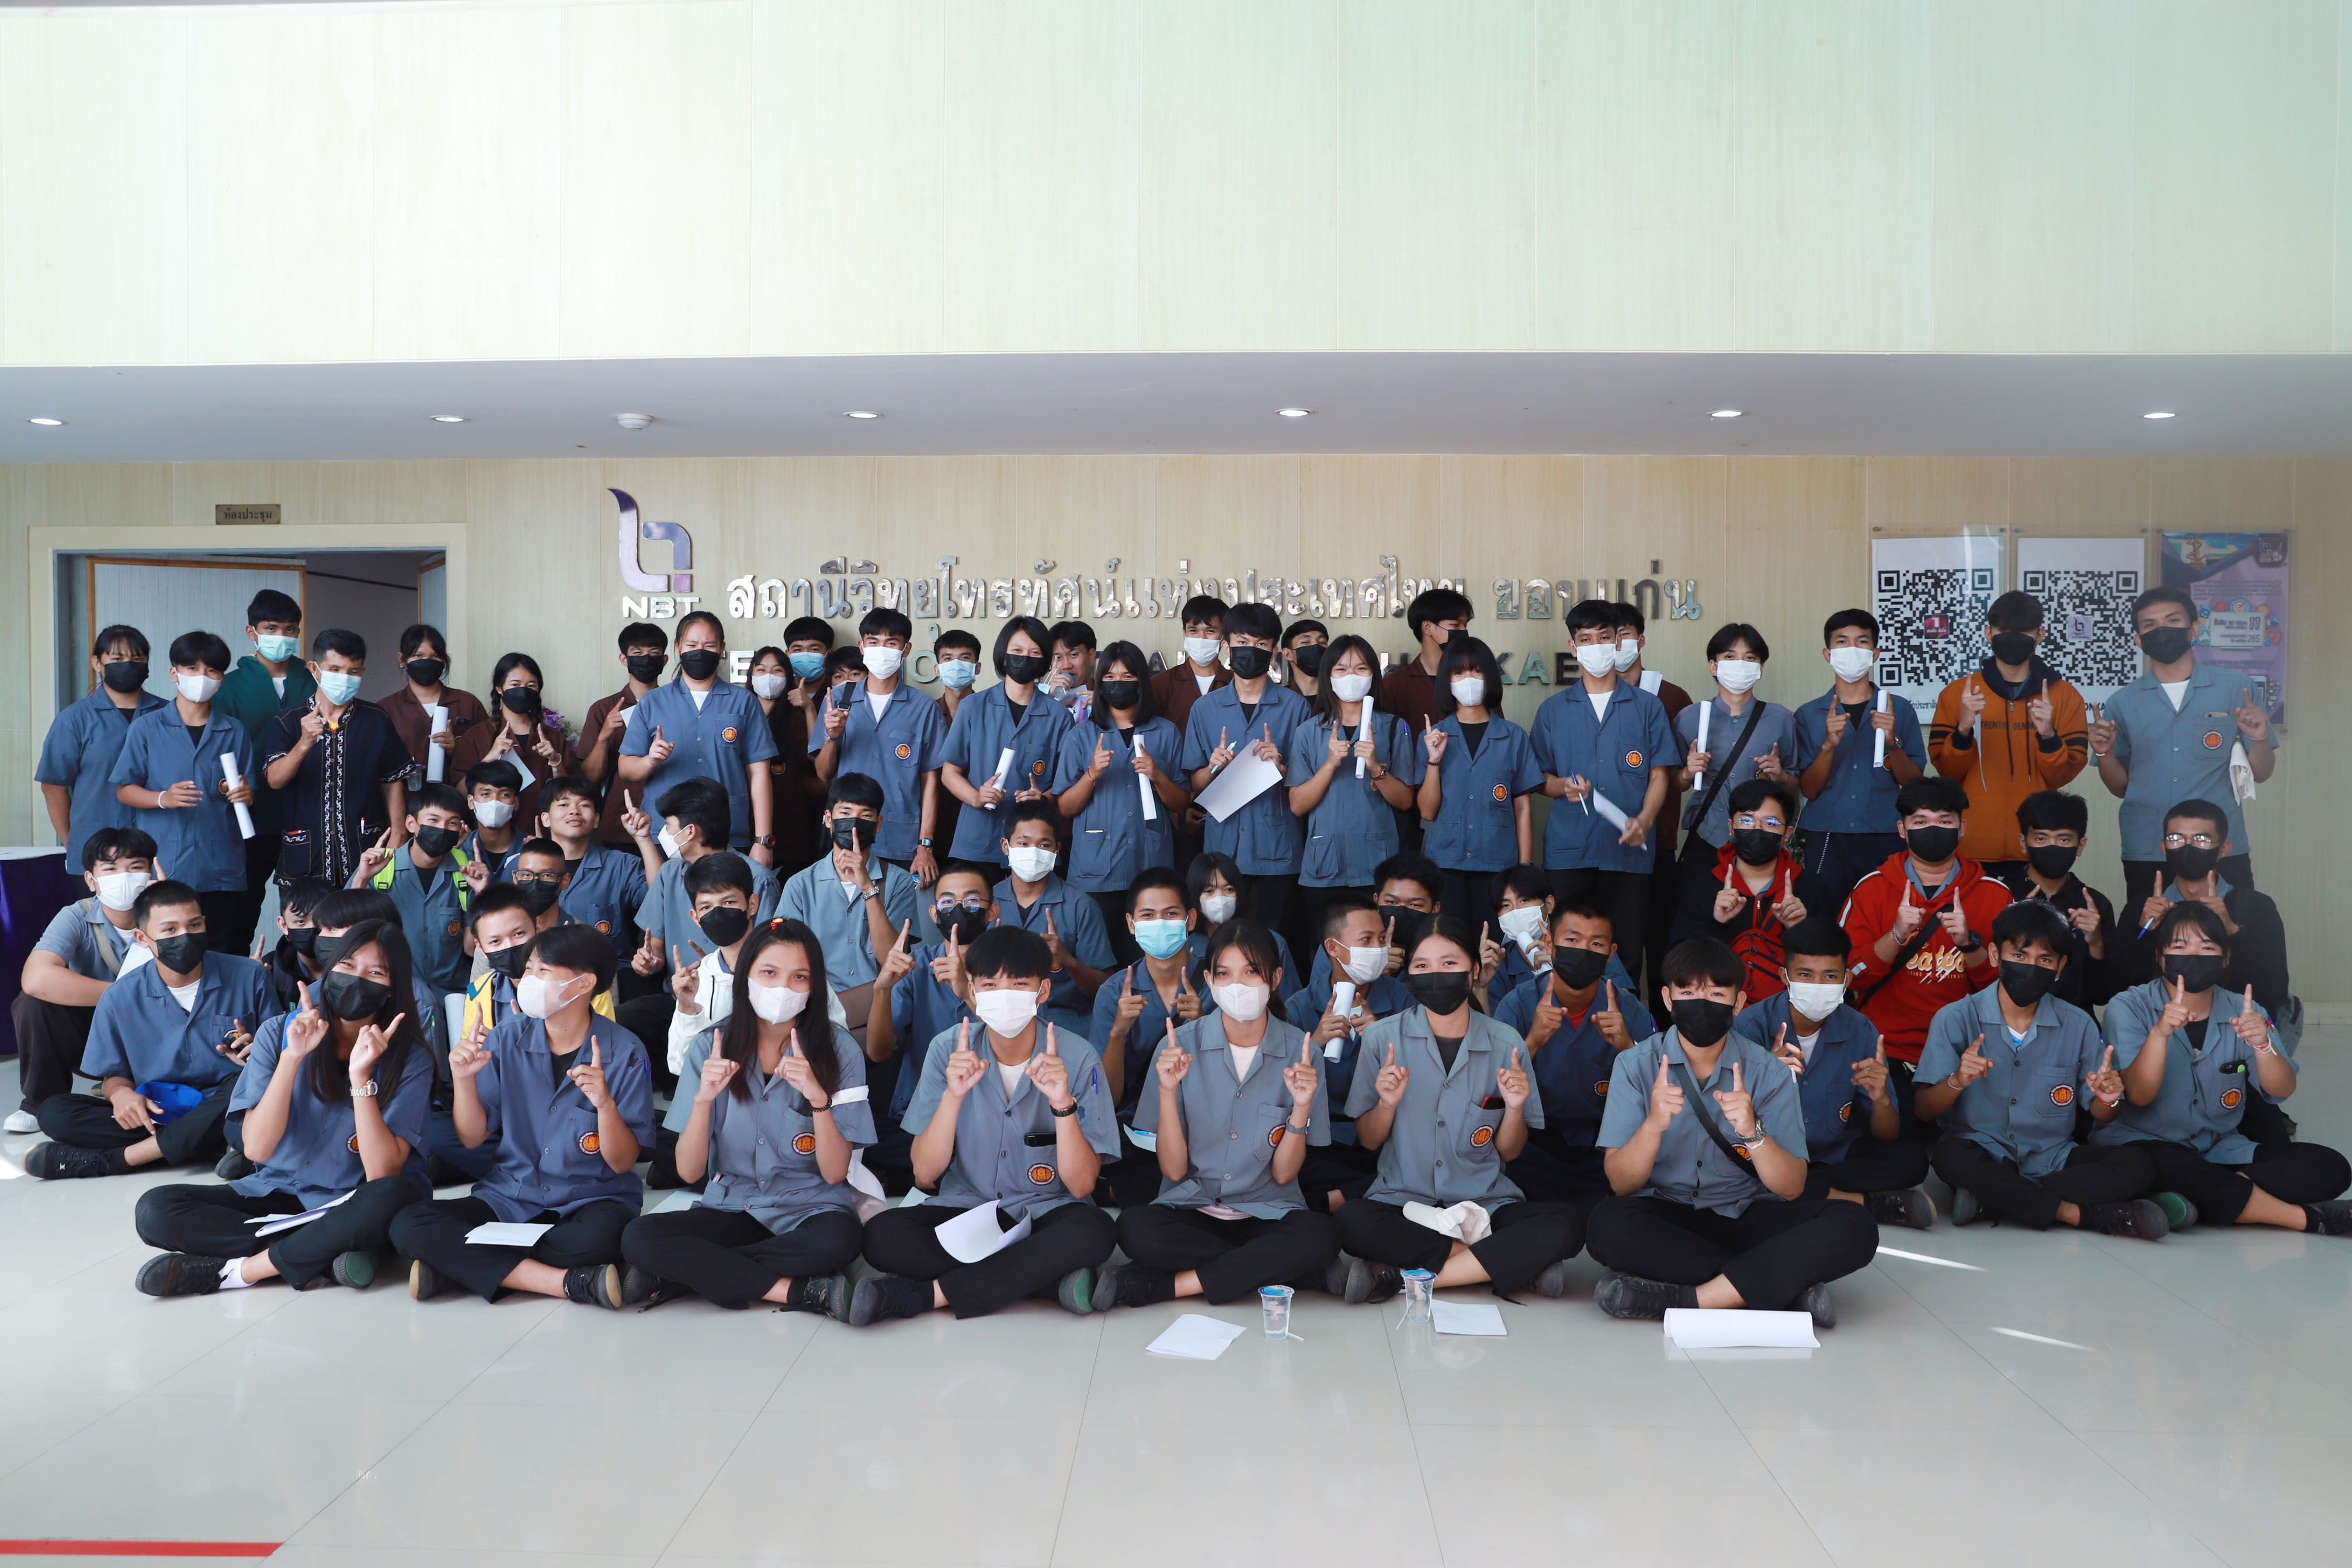 นักเรียนนักศึกษาจากวิทยาลัยเทคนิคกาฬสินธุ์ เข้าเยี่ยมชมและศึกษาดูงานที่สถานีวิทยุโทรทัศน์แห่งประเทศไทย จังหวัดขอนแก่น